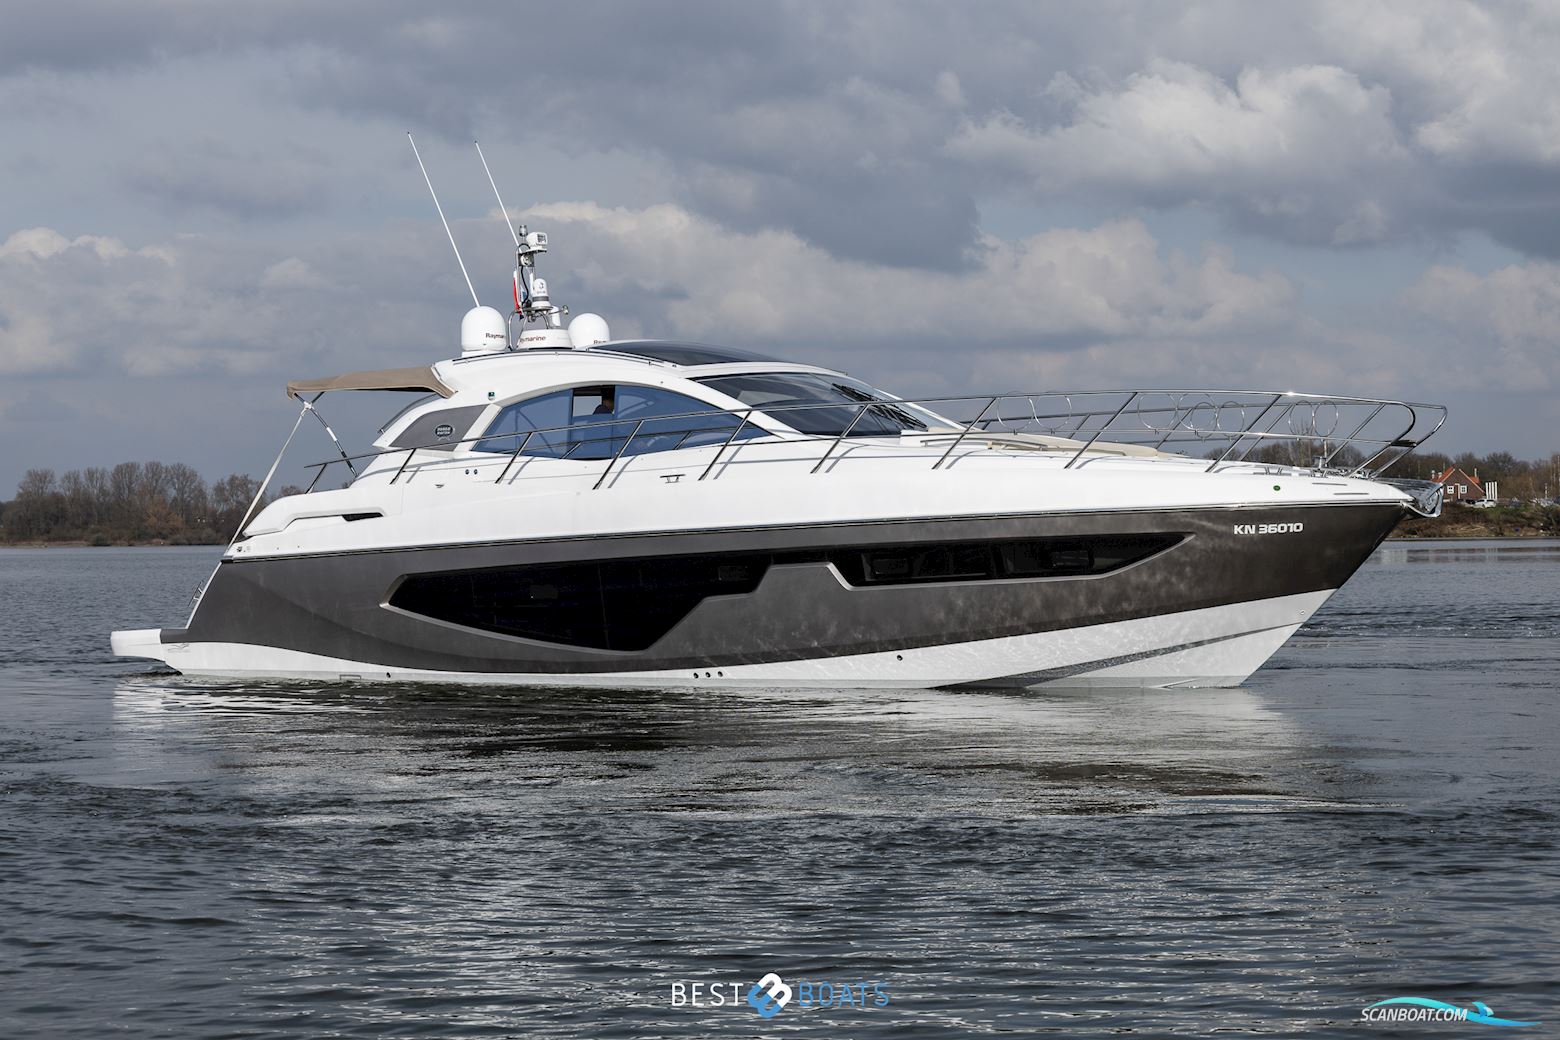 Sessa C44 Motorbåd 2020, med Volvo Penta motor, Holland